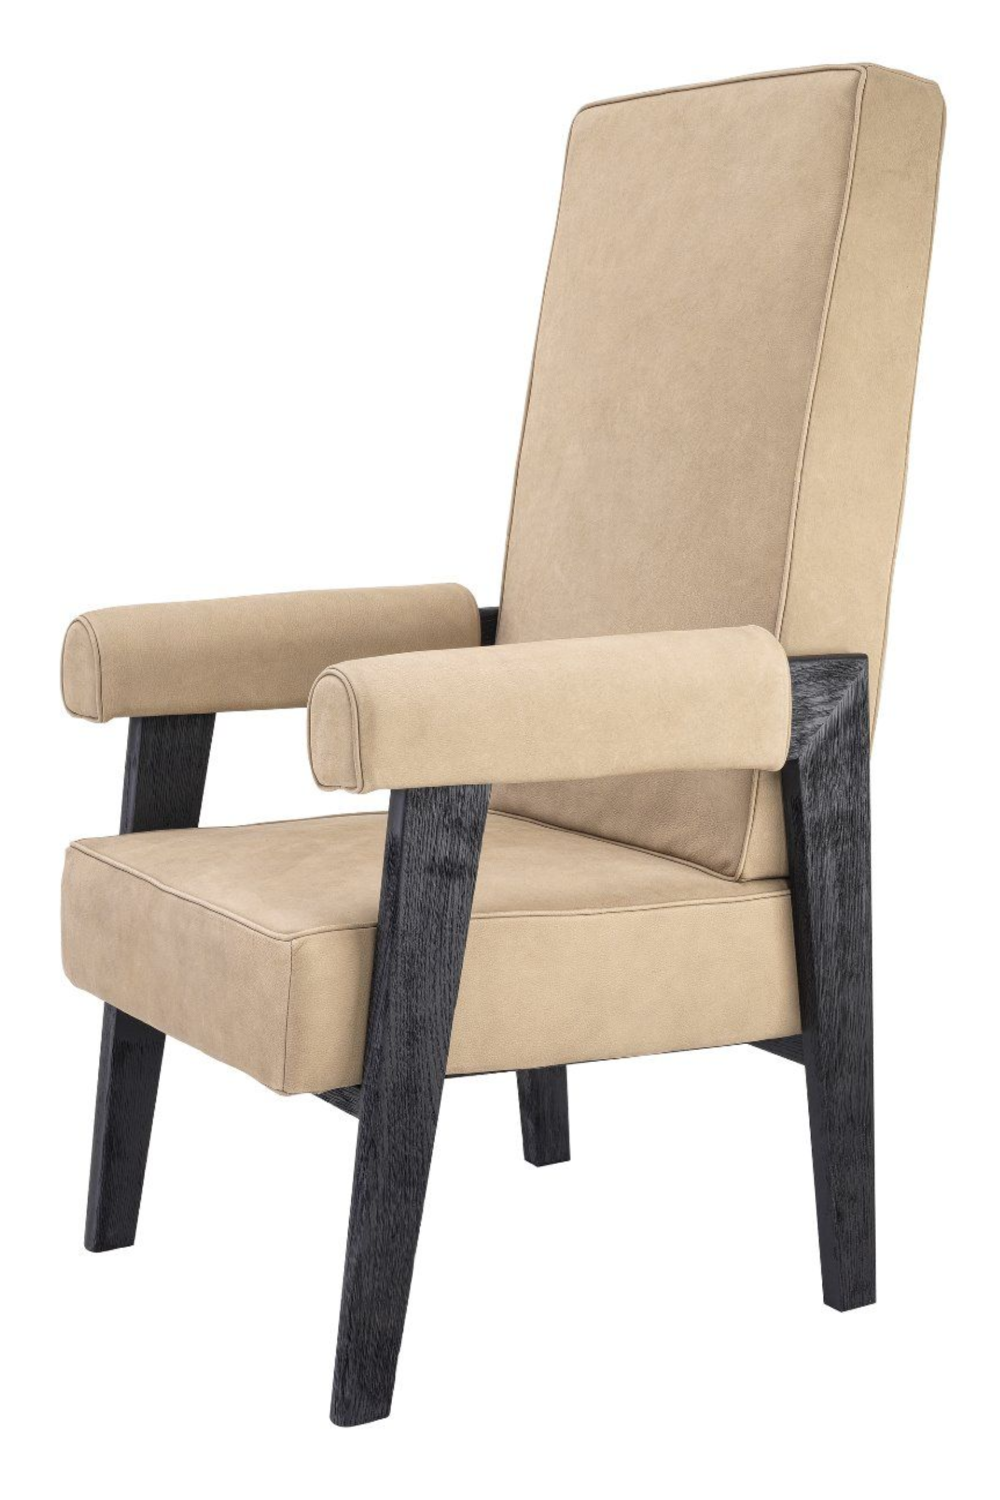 Beige High-Back Chair | Eichholtz Milo | Oroa.com